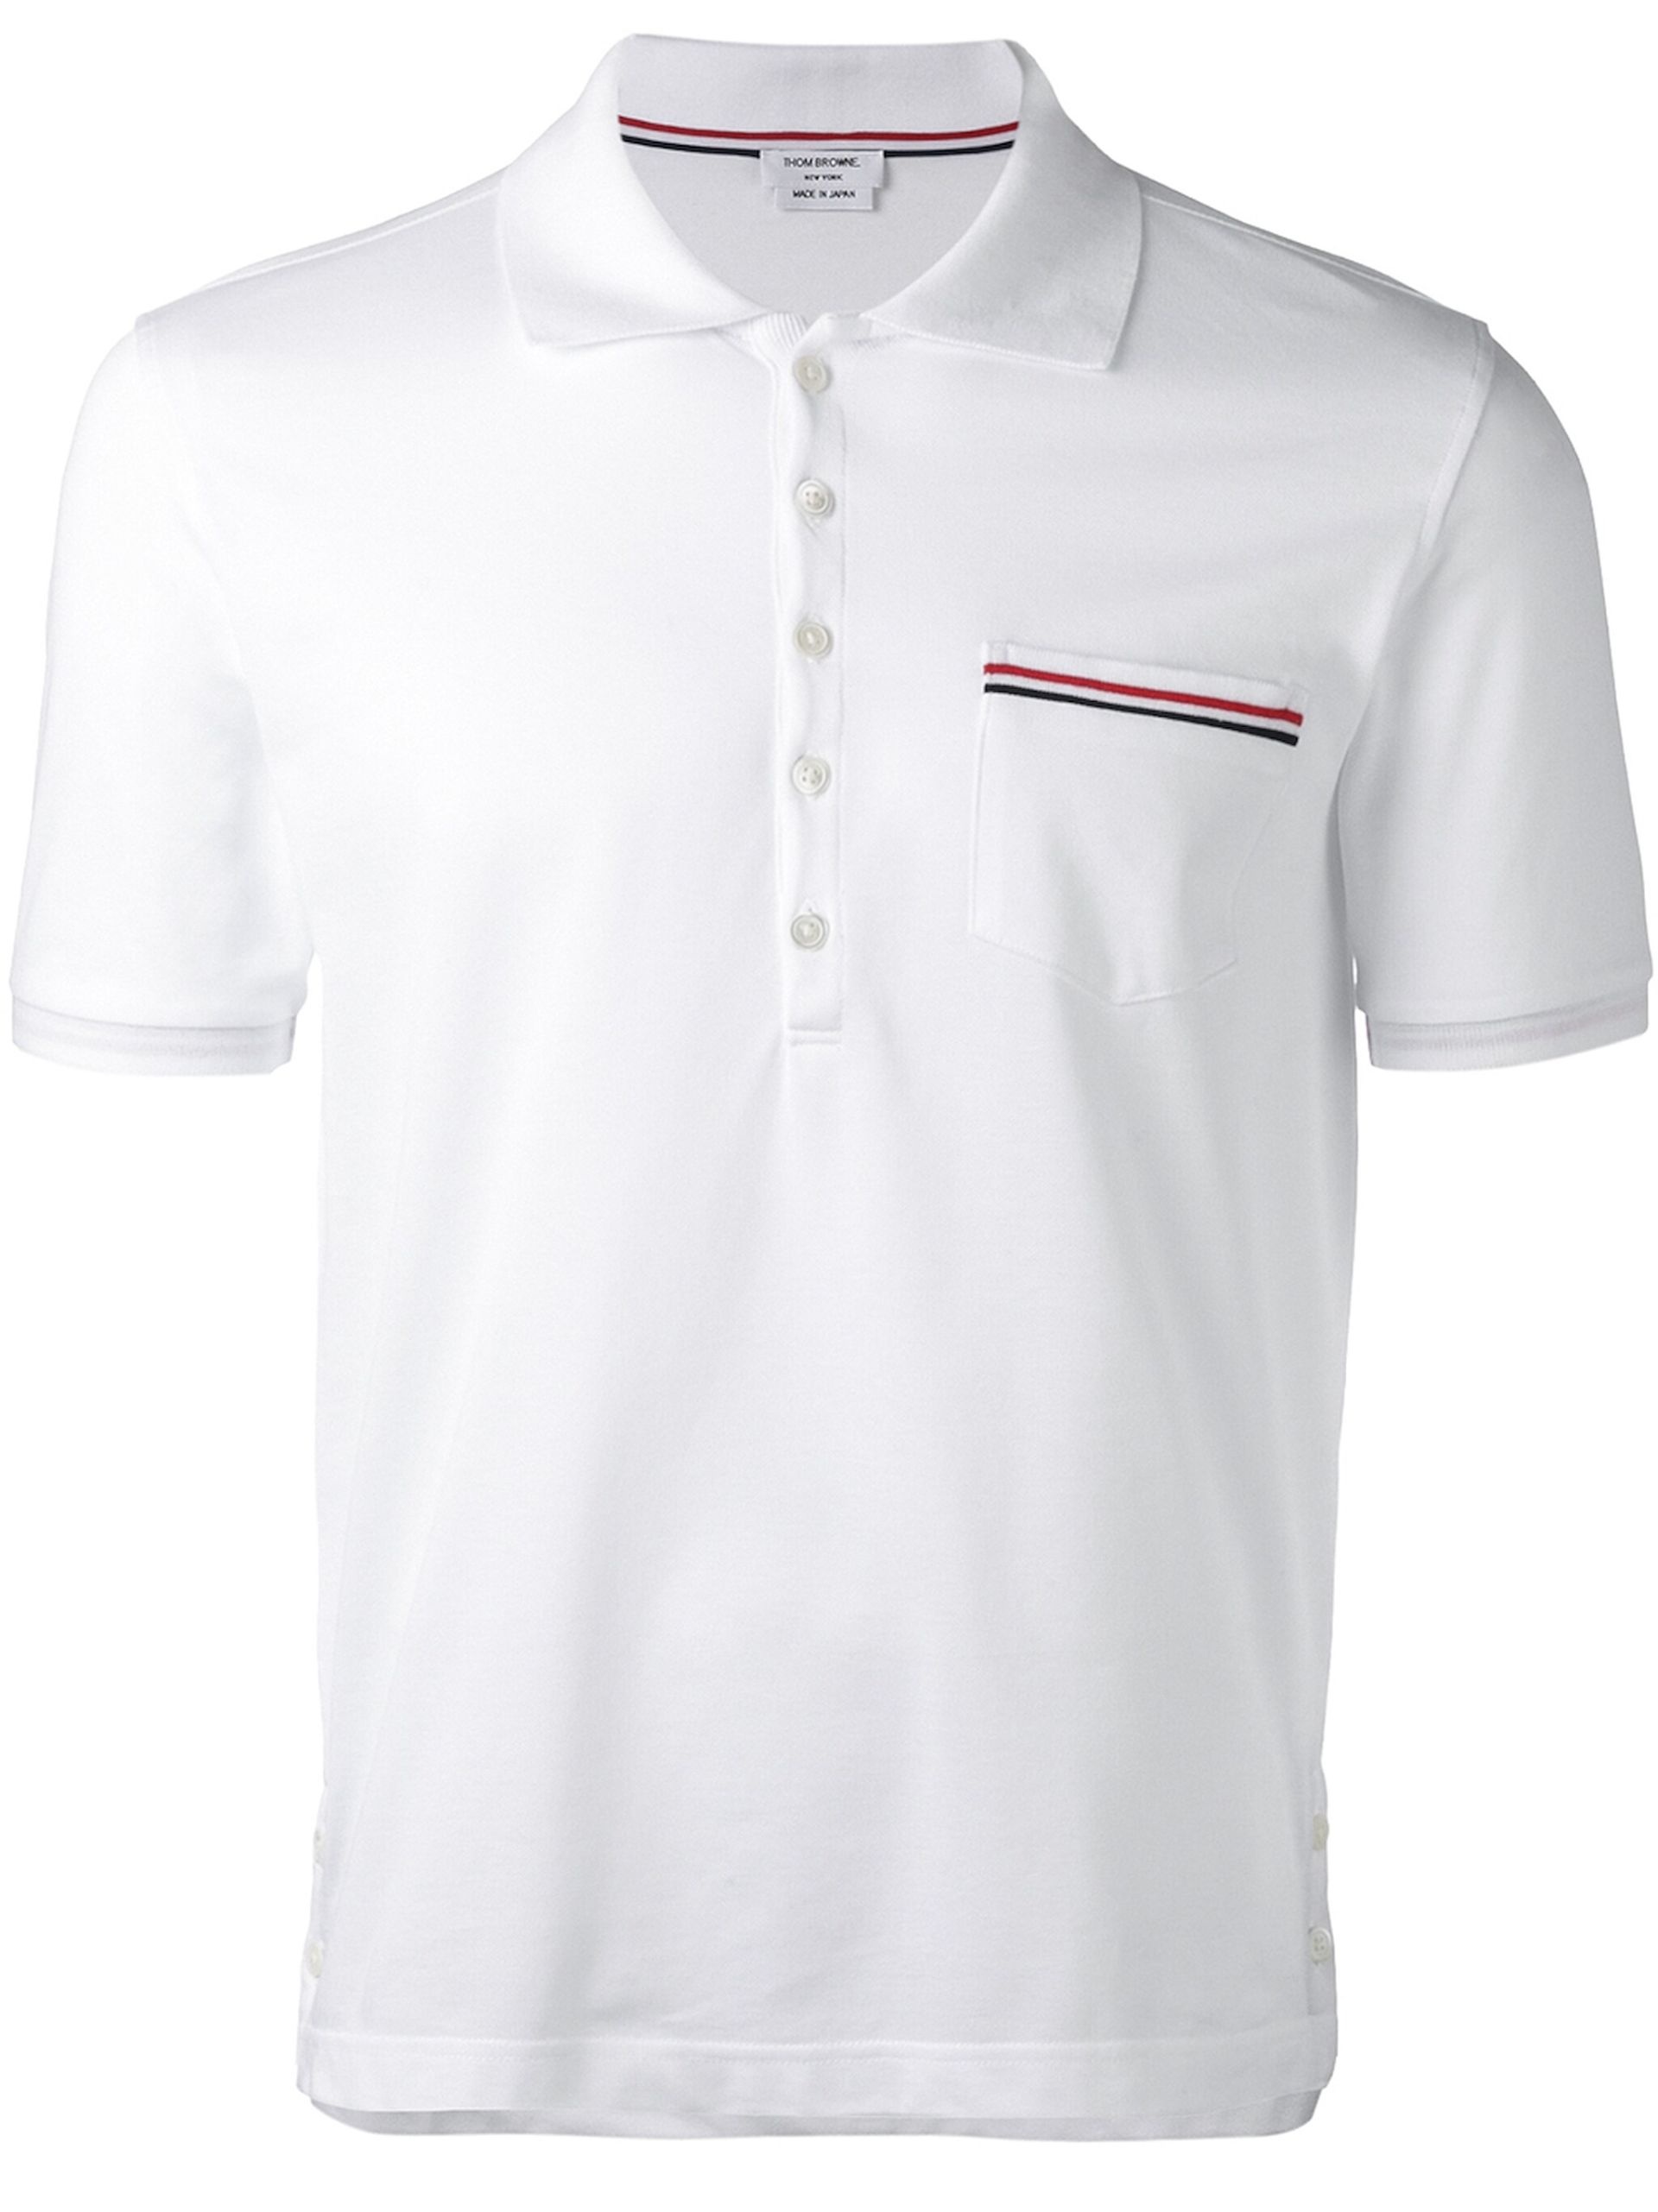 White RWB-Stripe Cotton Polo Shirt - 1